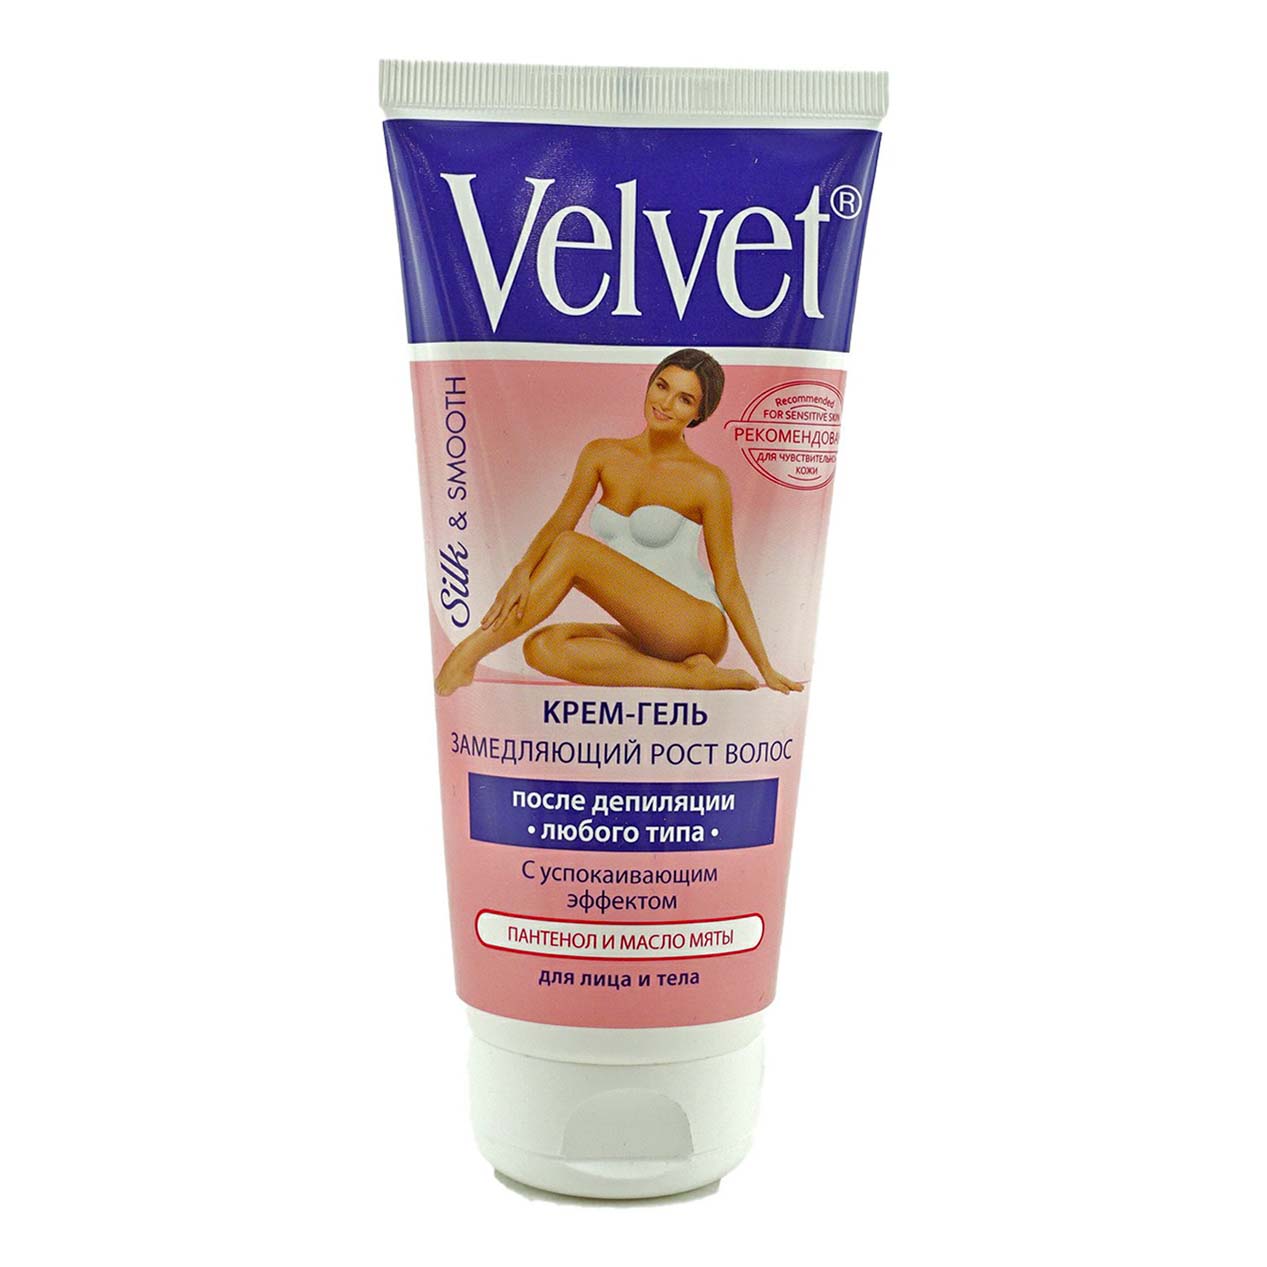 Купить Крем-гель после депиляции Velvet замедляющий рост волос с успокаивающим эффектом 200 мл